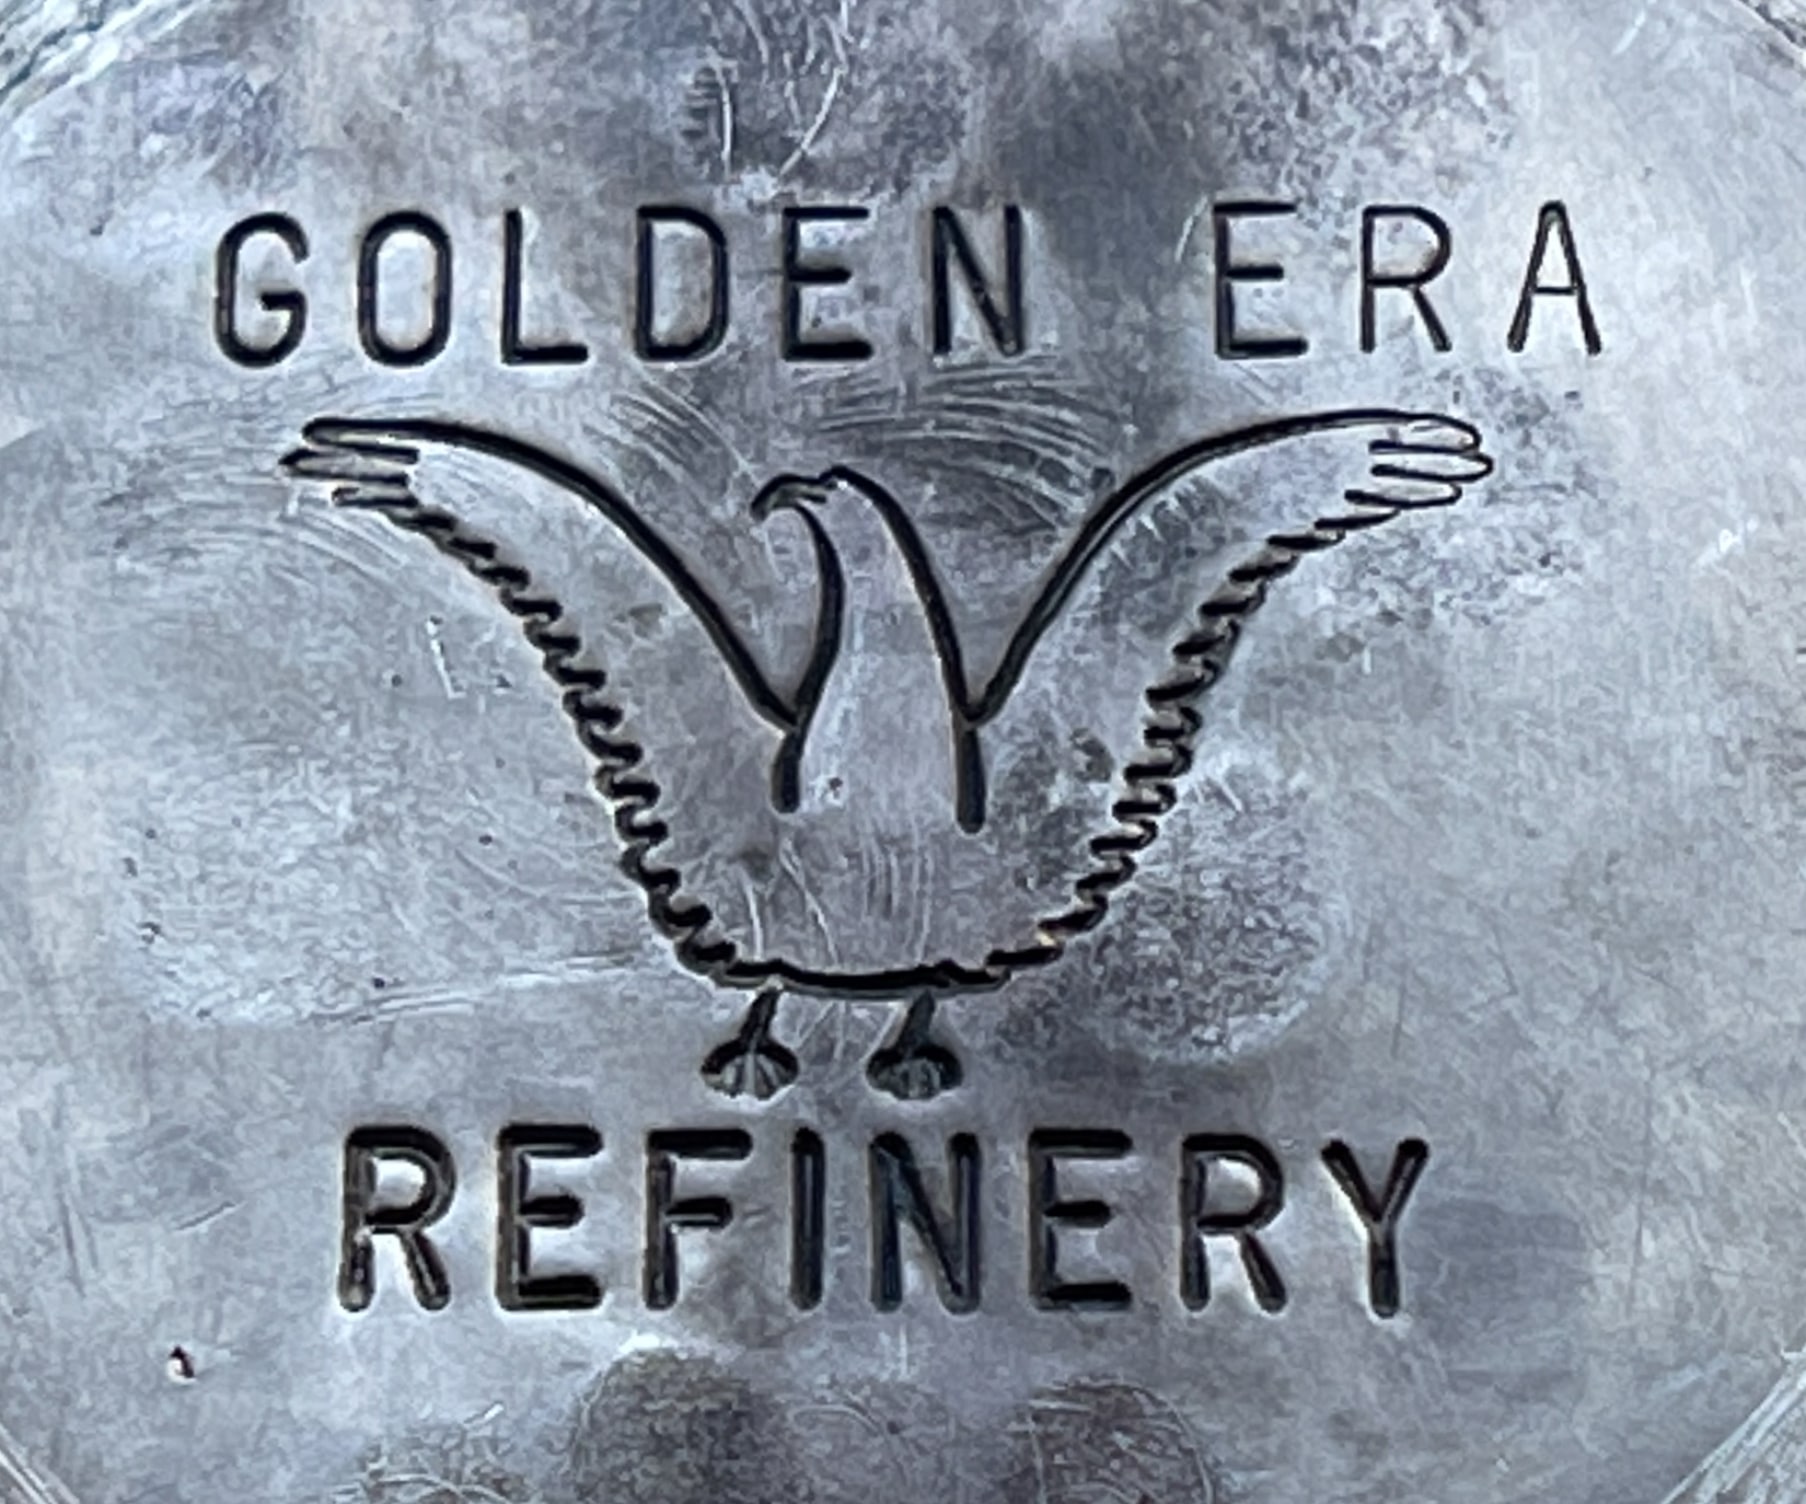 Golden Era Refinery Hallmark-2